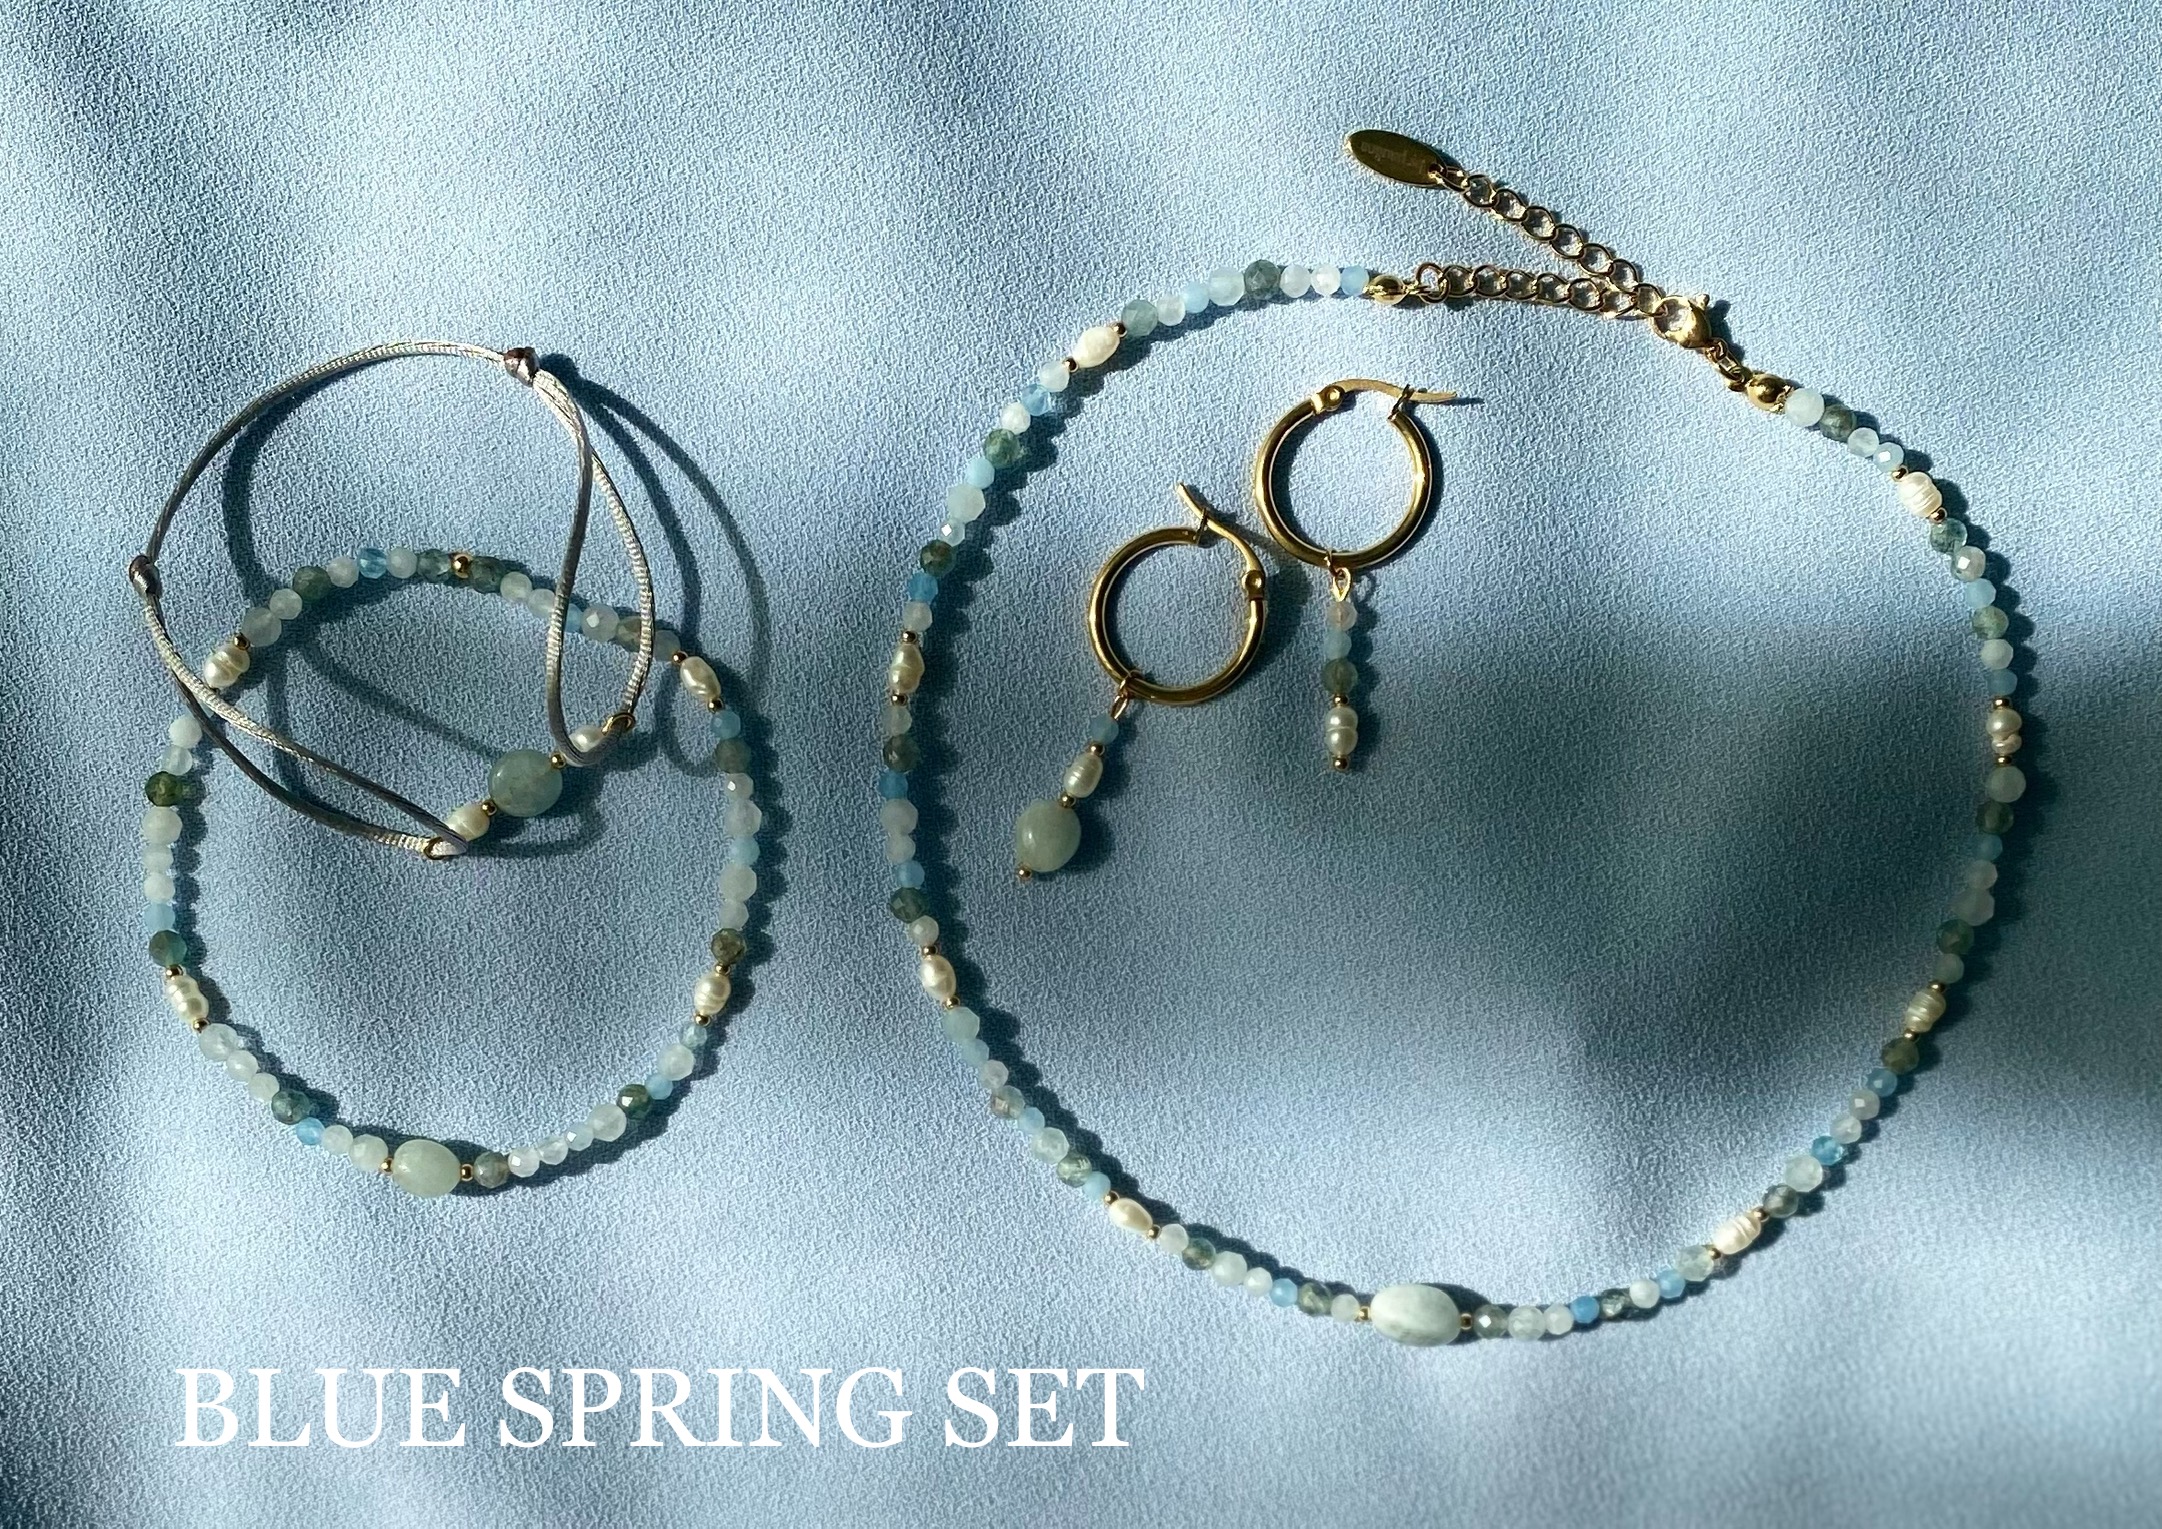 Blue spring set